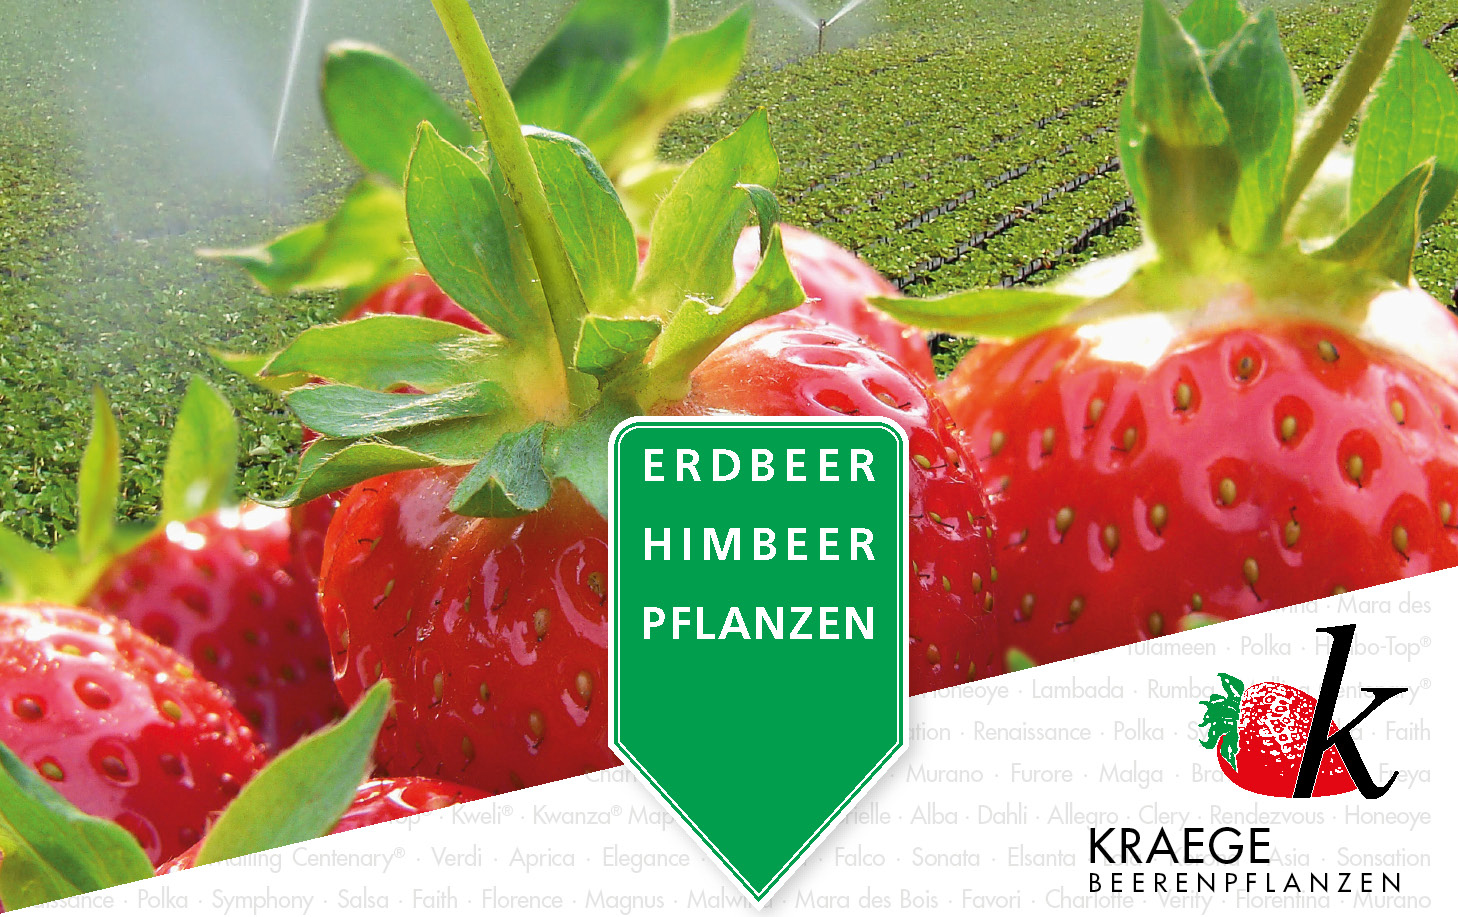 Erdbeer- und Himbeerpflanzen für die Direktvermarktung